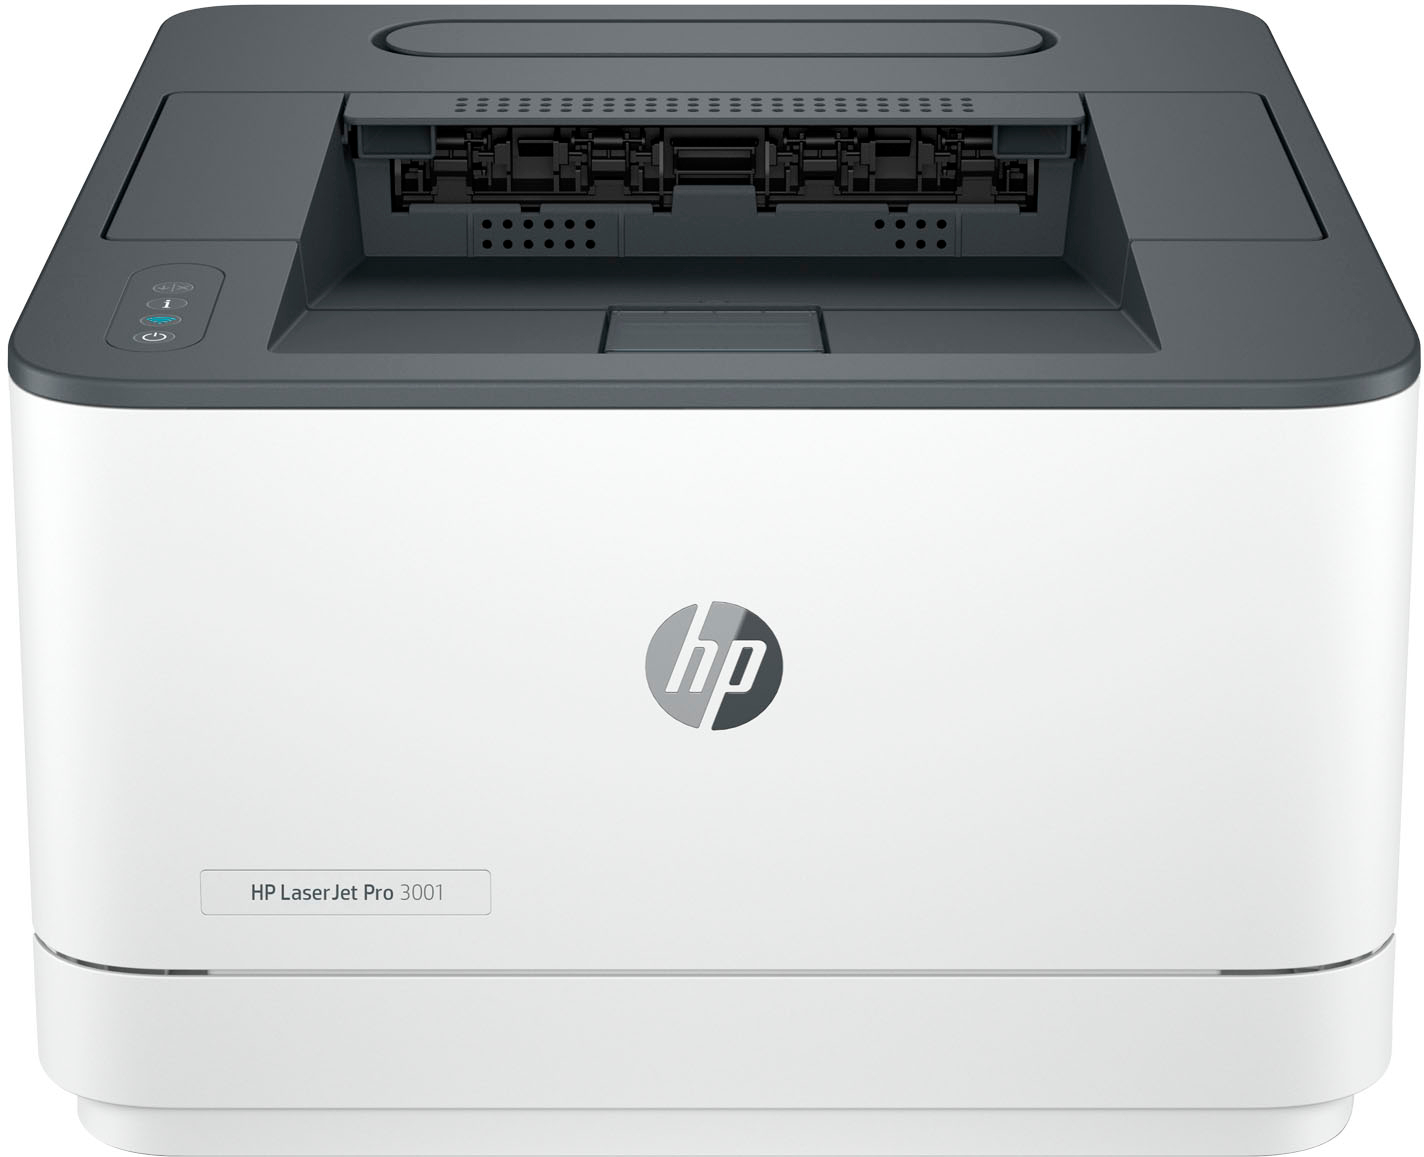 Náplně do tiskárny HP LaserJet Pro 3002dwe